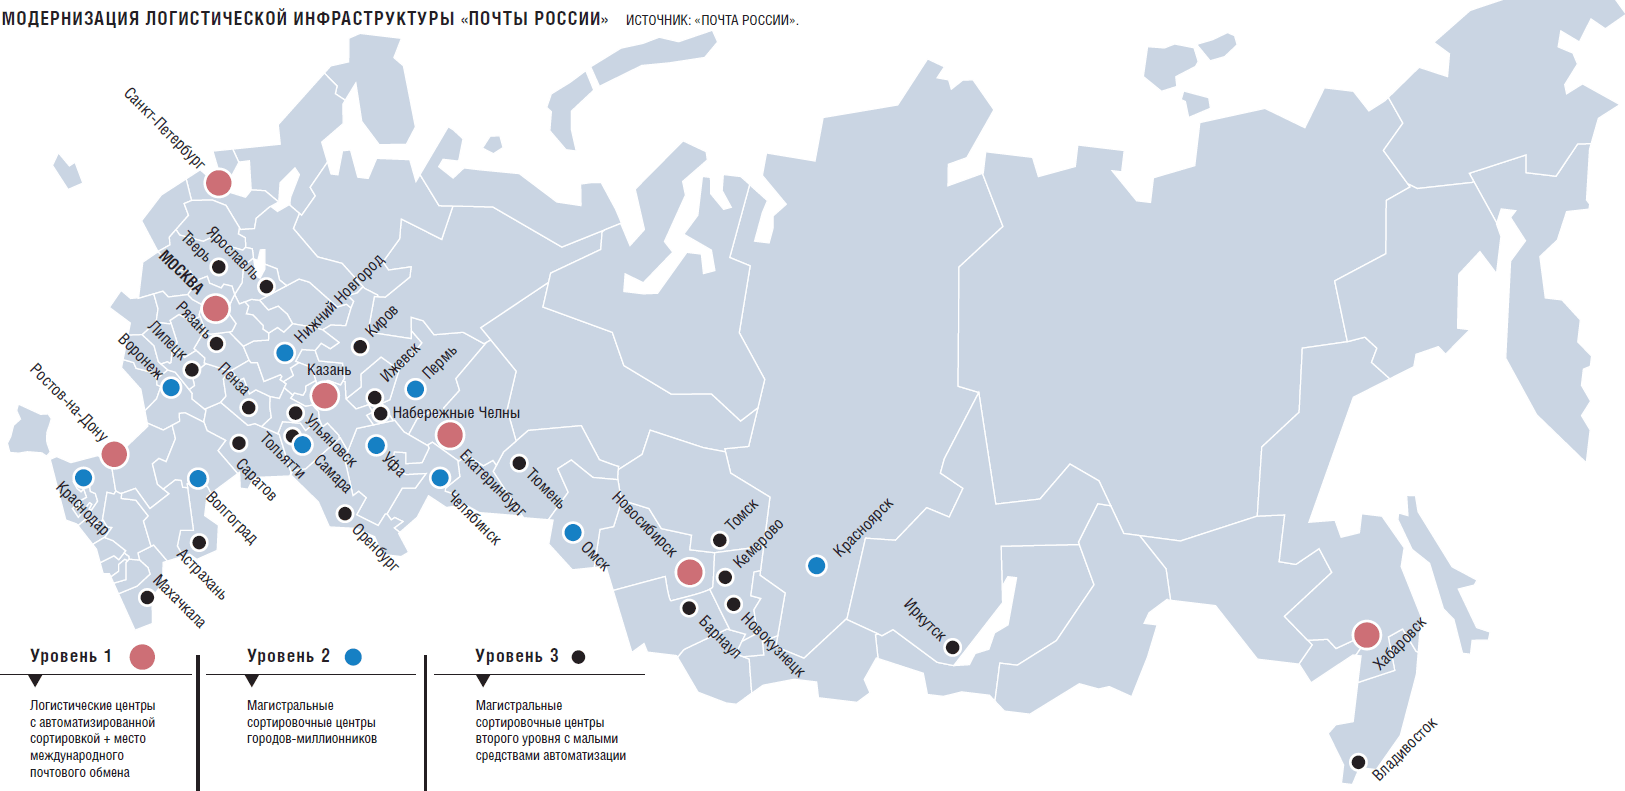 Подпишите на карте город миллионер. Крупные аэропорты России на карте. 10 Крупных аэропортов в России на карте. Сортировочные центры почты России на карте. Логистическая карта России.